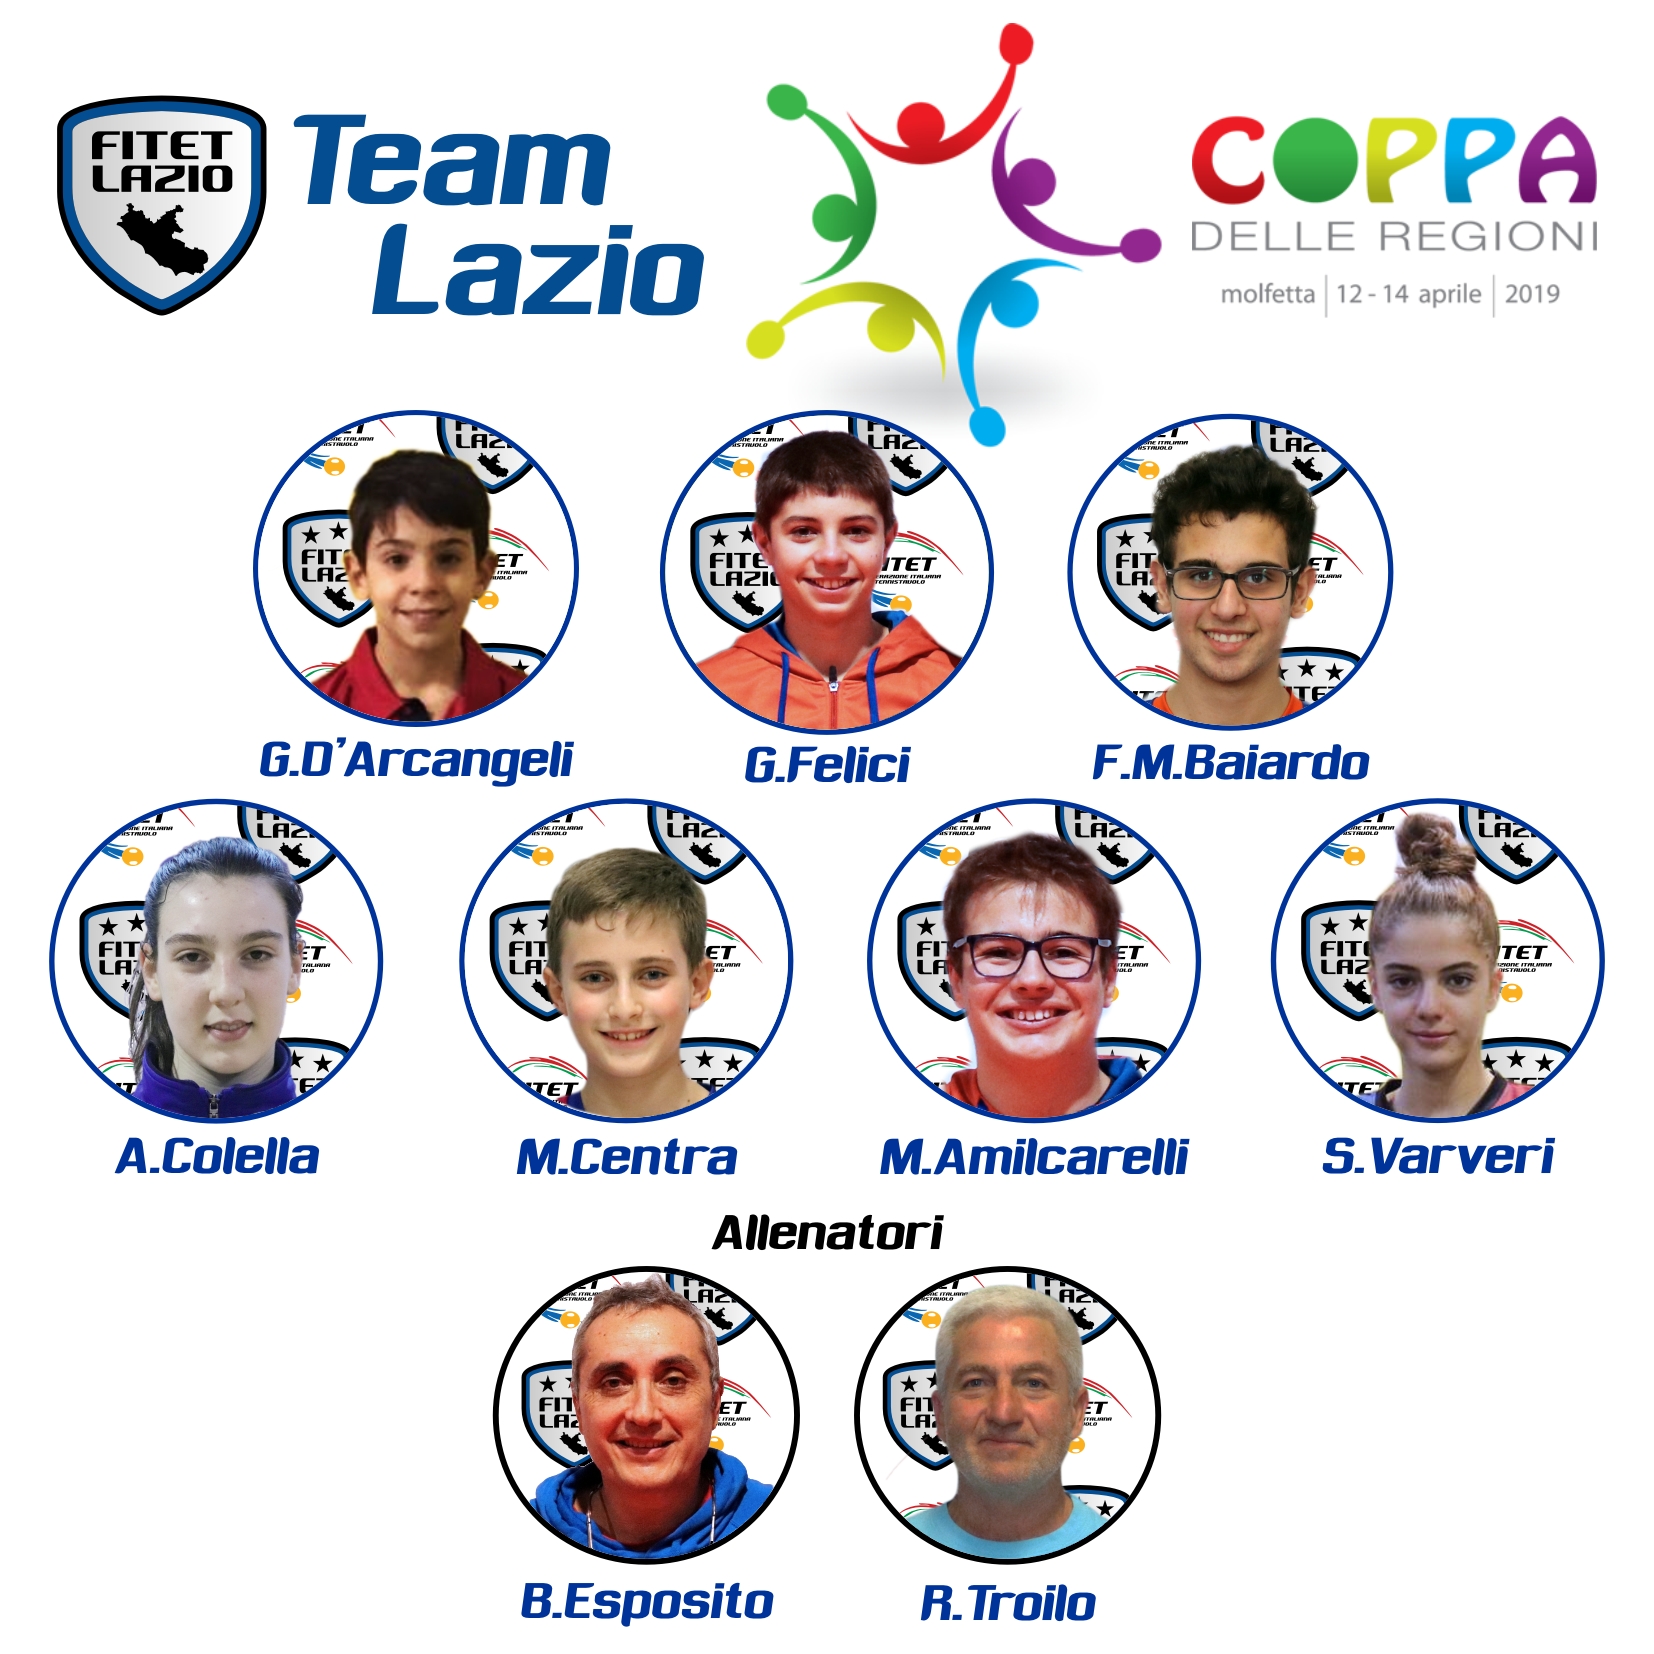 Coppa delle Regioni 2019 Team Lazio